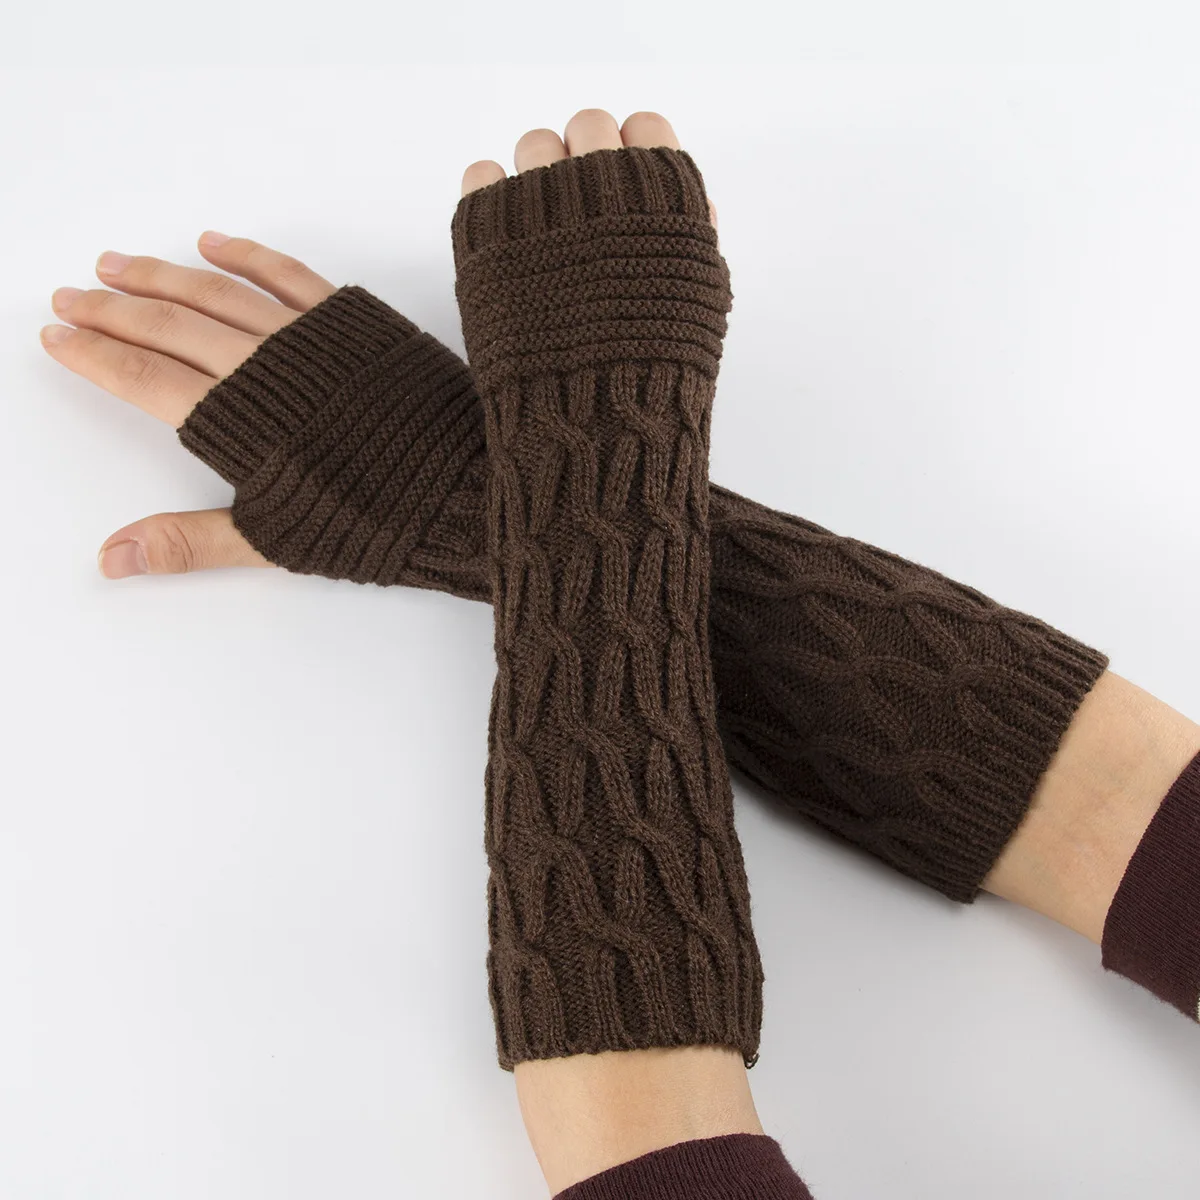 Dámské bezprsté rukavice - pletené, dlouhé (délka 30 cm), chránící celé zápěstí